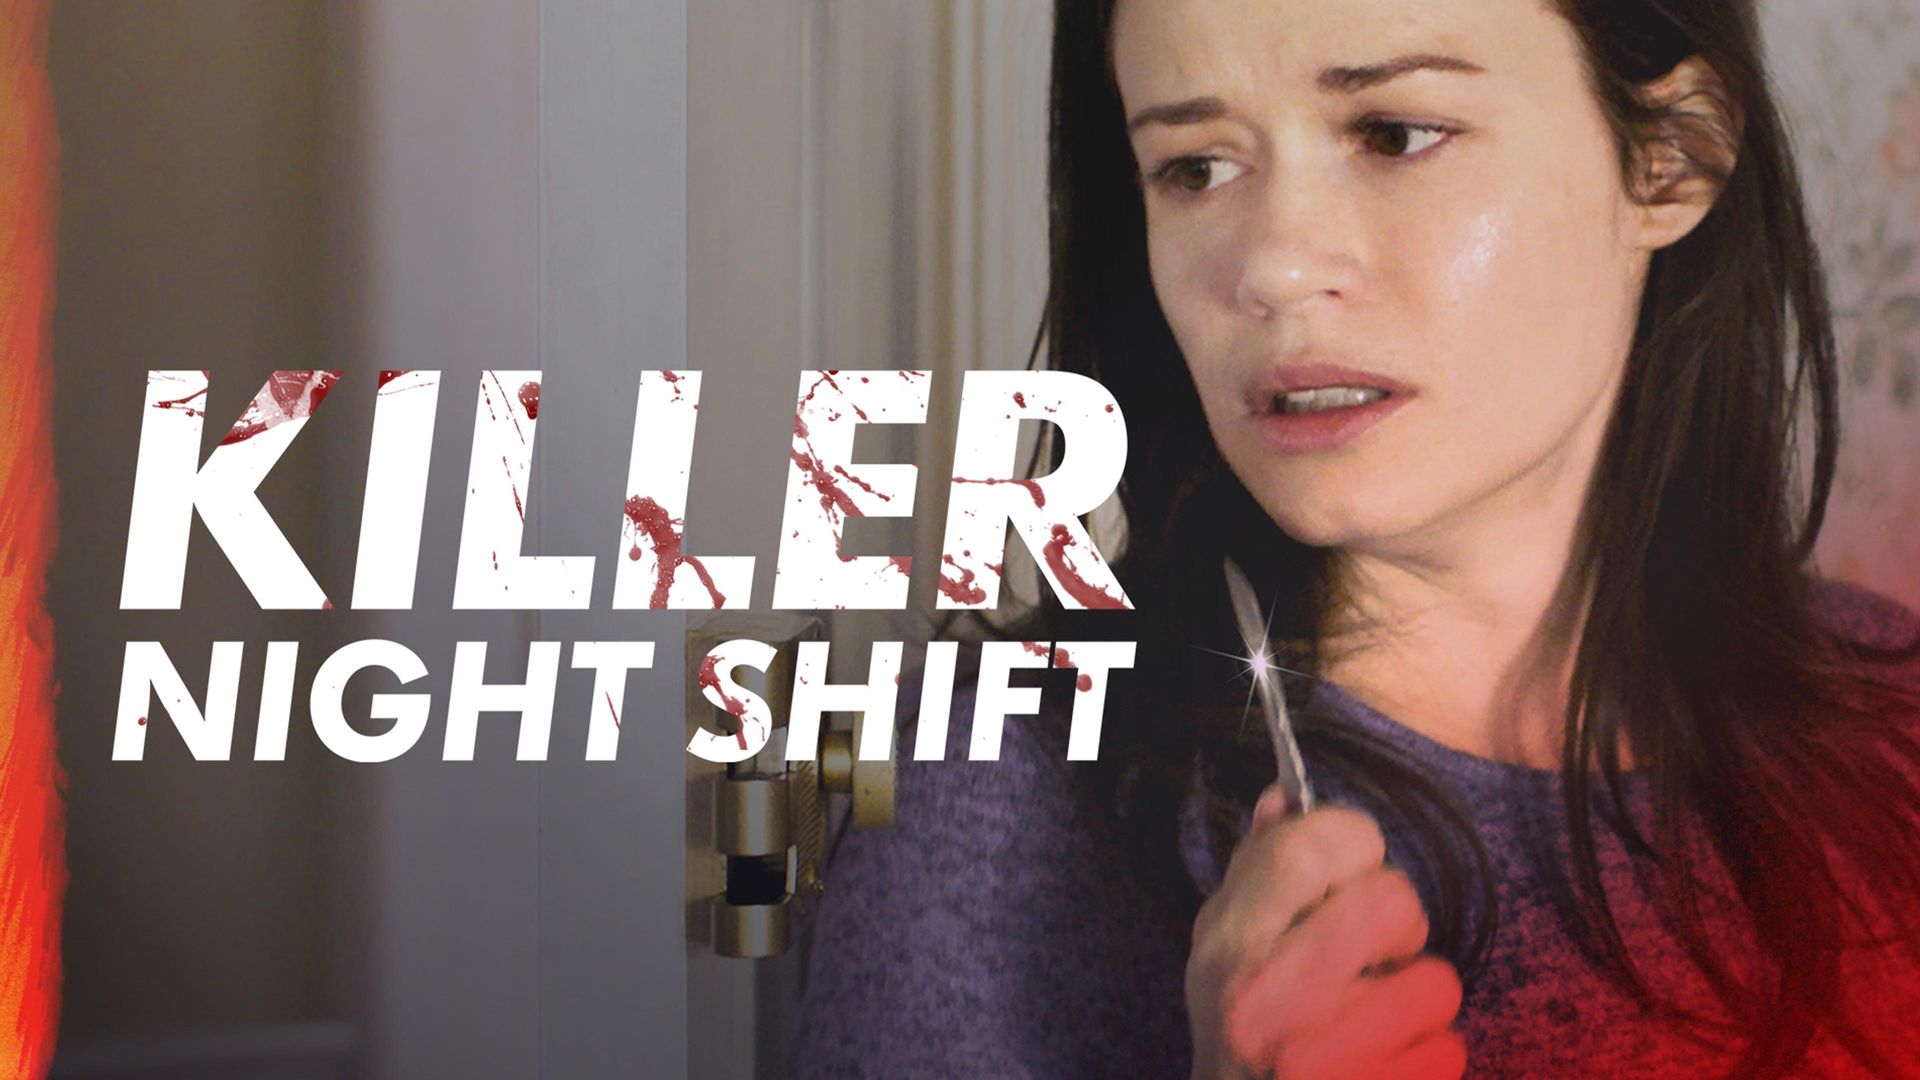 Night Shift (2020) - IMDb